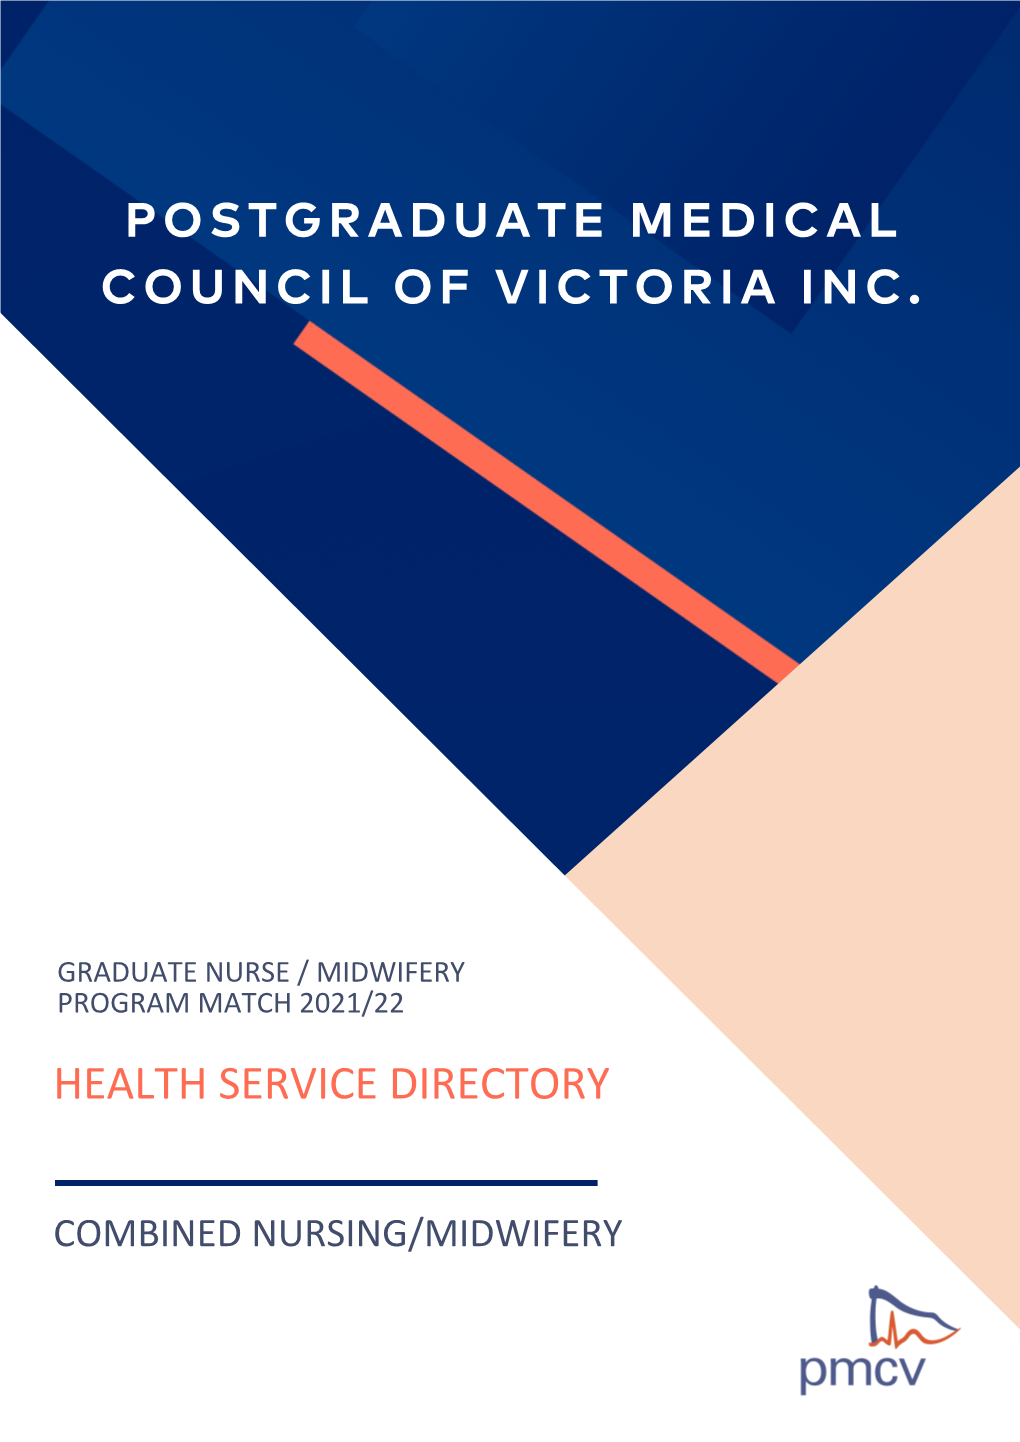 Postgraduate Medical Council of Victoria Inc